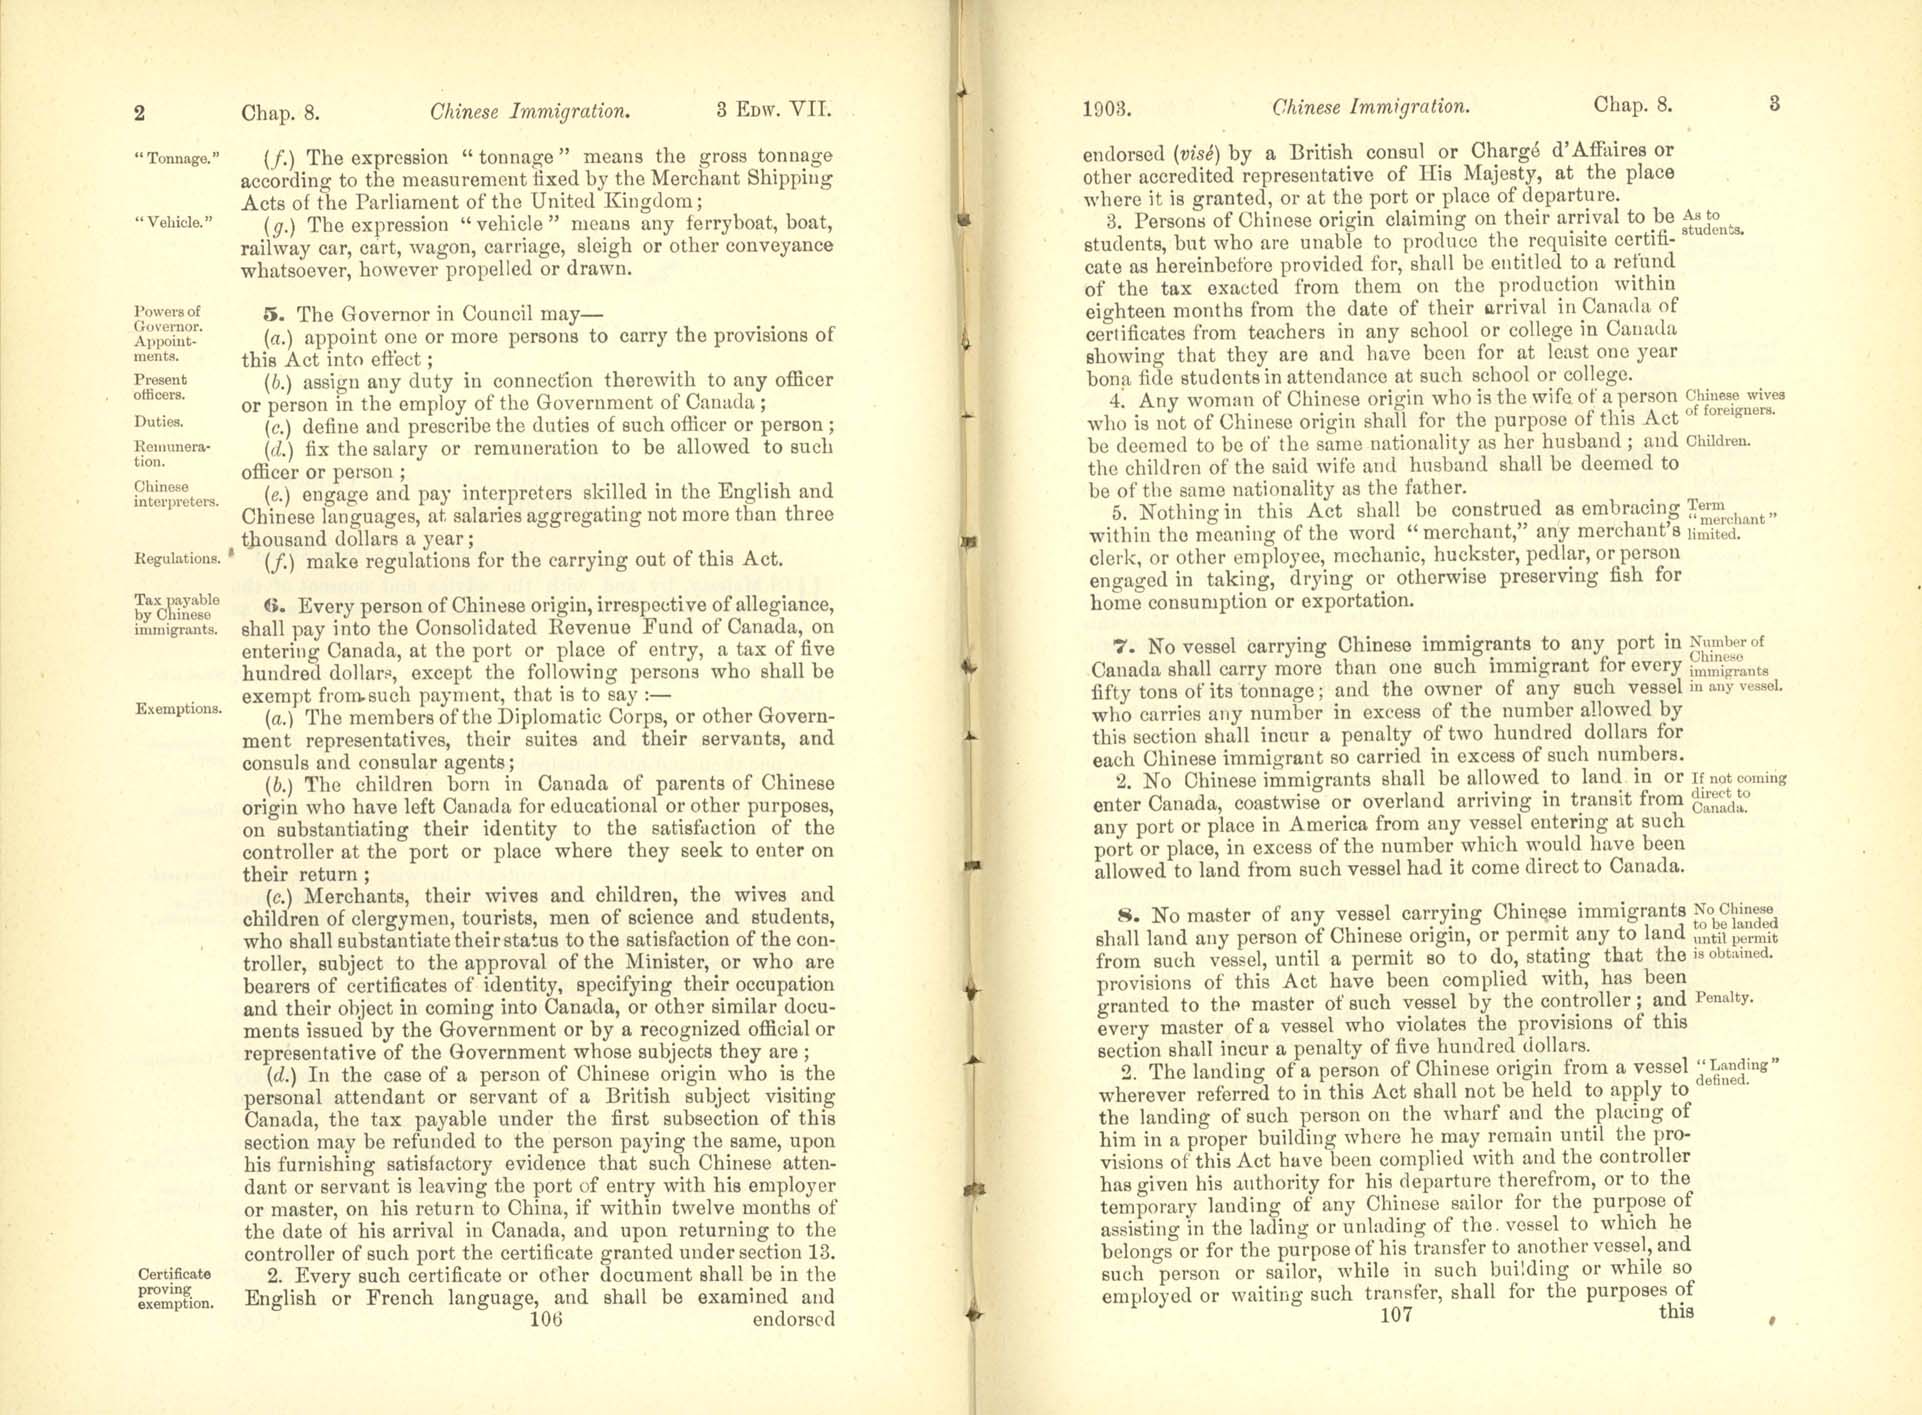 Chap. 8 Page 106, 107 Acte de l’immigration chinoise, 1885 Amendment 1903